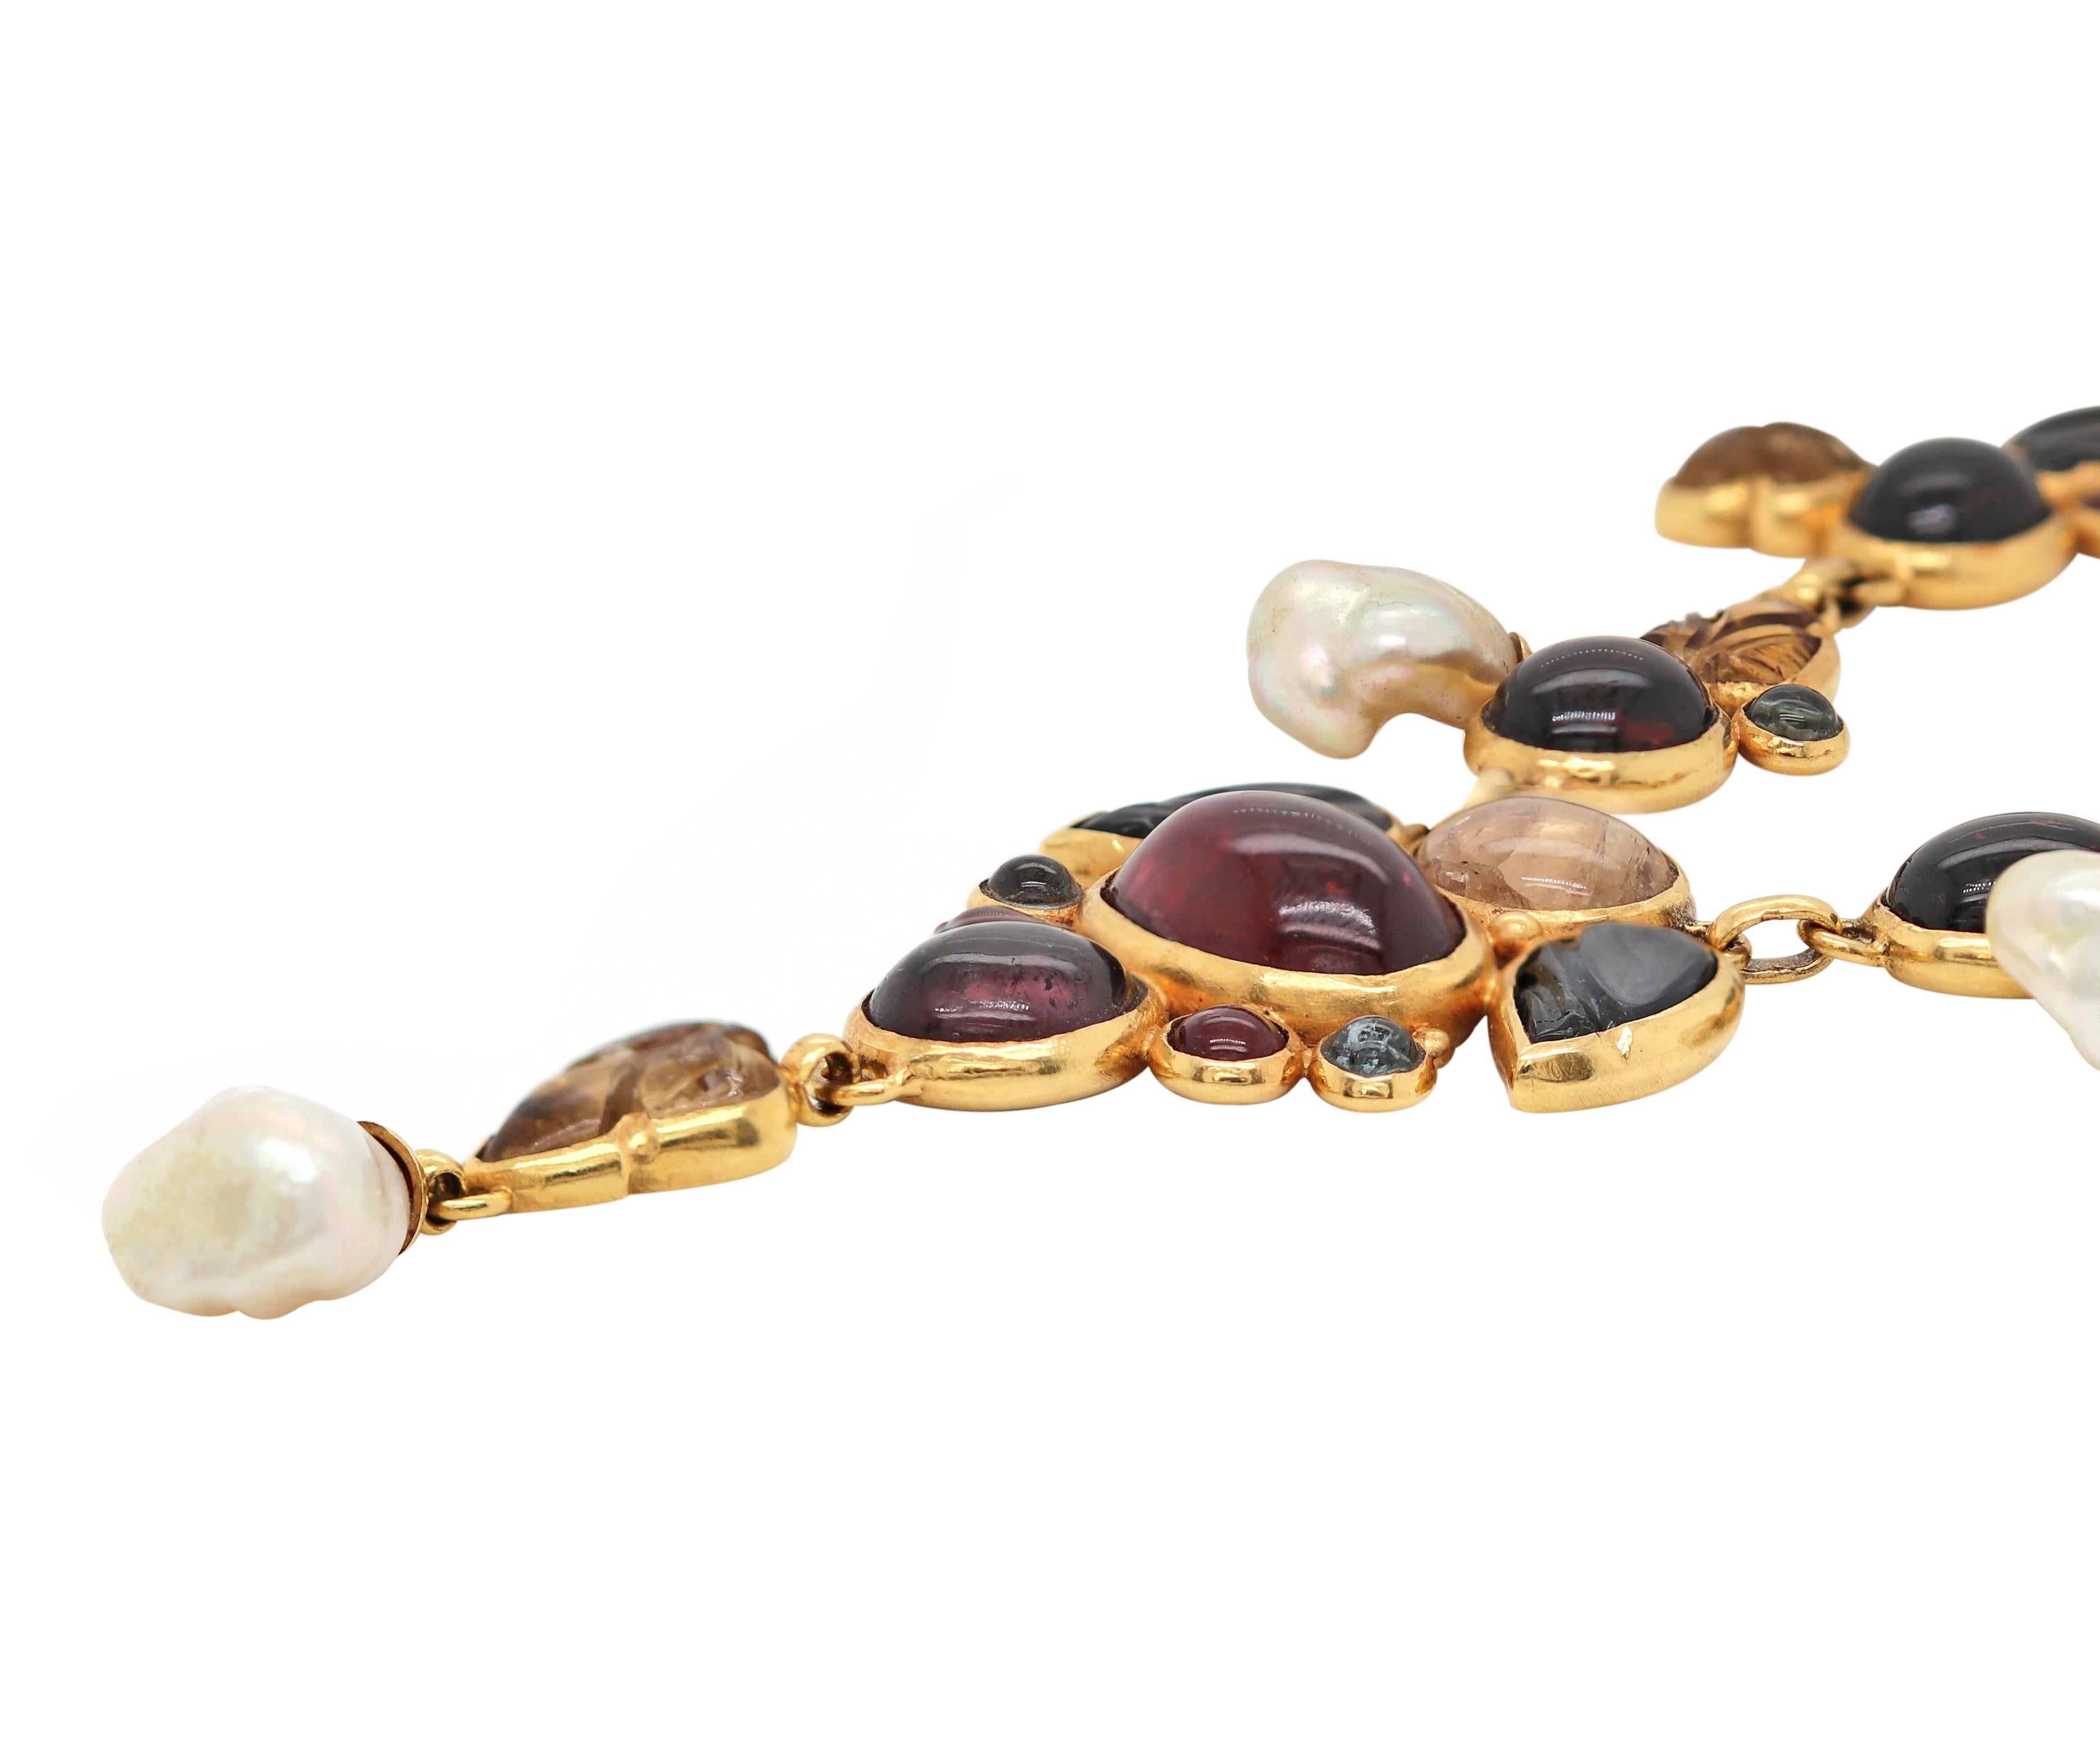 Diese einzigartige Halskette ist wunderschön mit einer unglaublichen Mischung aus Edelsteinen und Perlen besetzt, die alle in 21 Karat Gelbgold gefasst und mit einem Haken- und Ösenverschluss versehen sind. Die Halskette misst 17,5 cm in der Länge